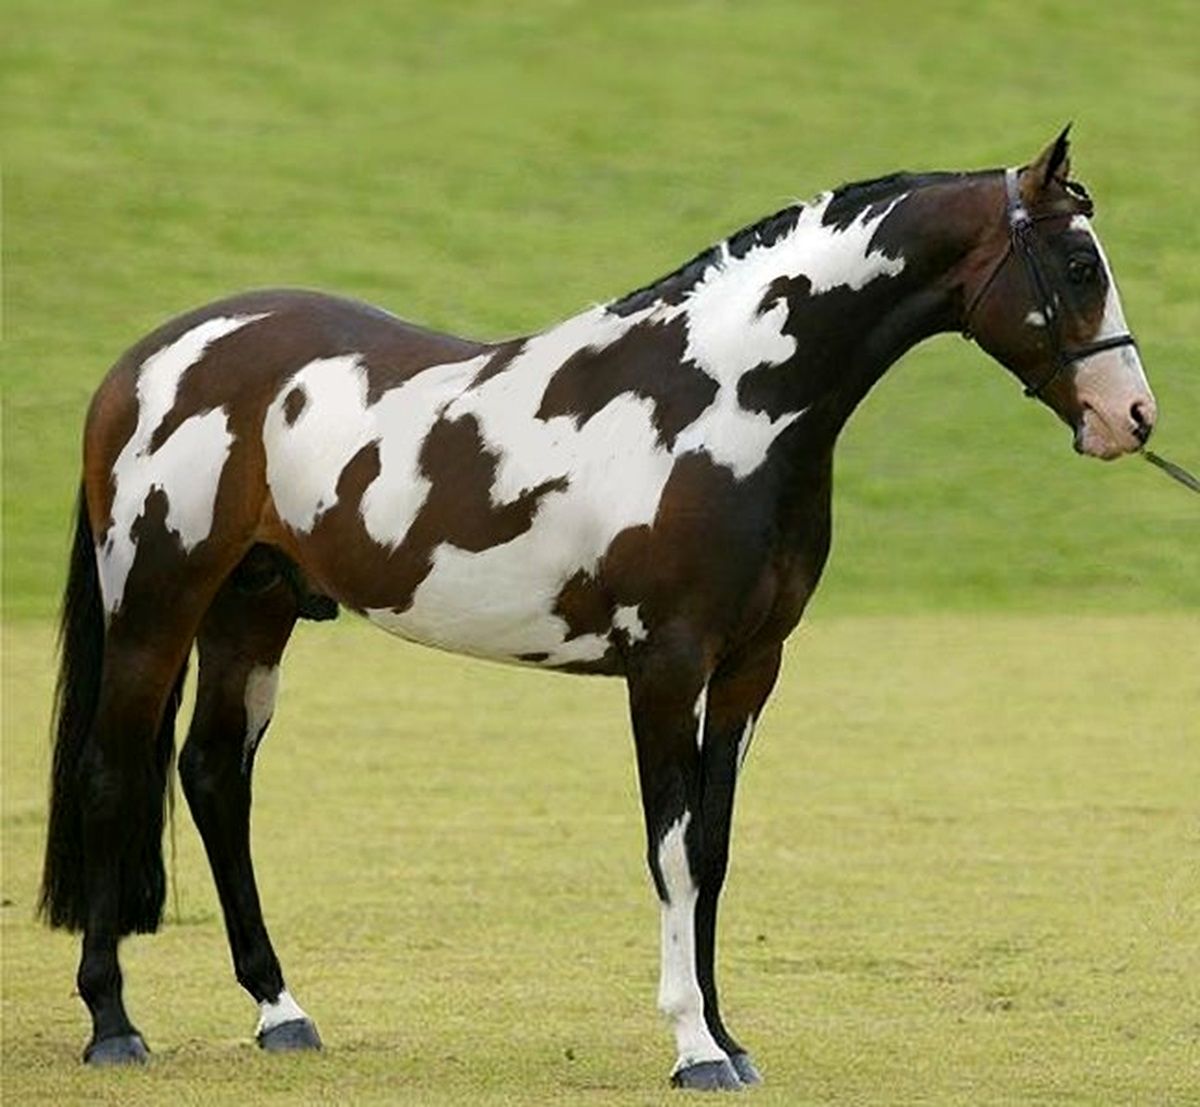 اگر اسب دوم را در تصویر تشخیص دهید، جزو یک درصد تیزبین جهان هستید!